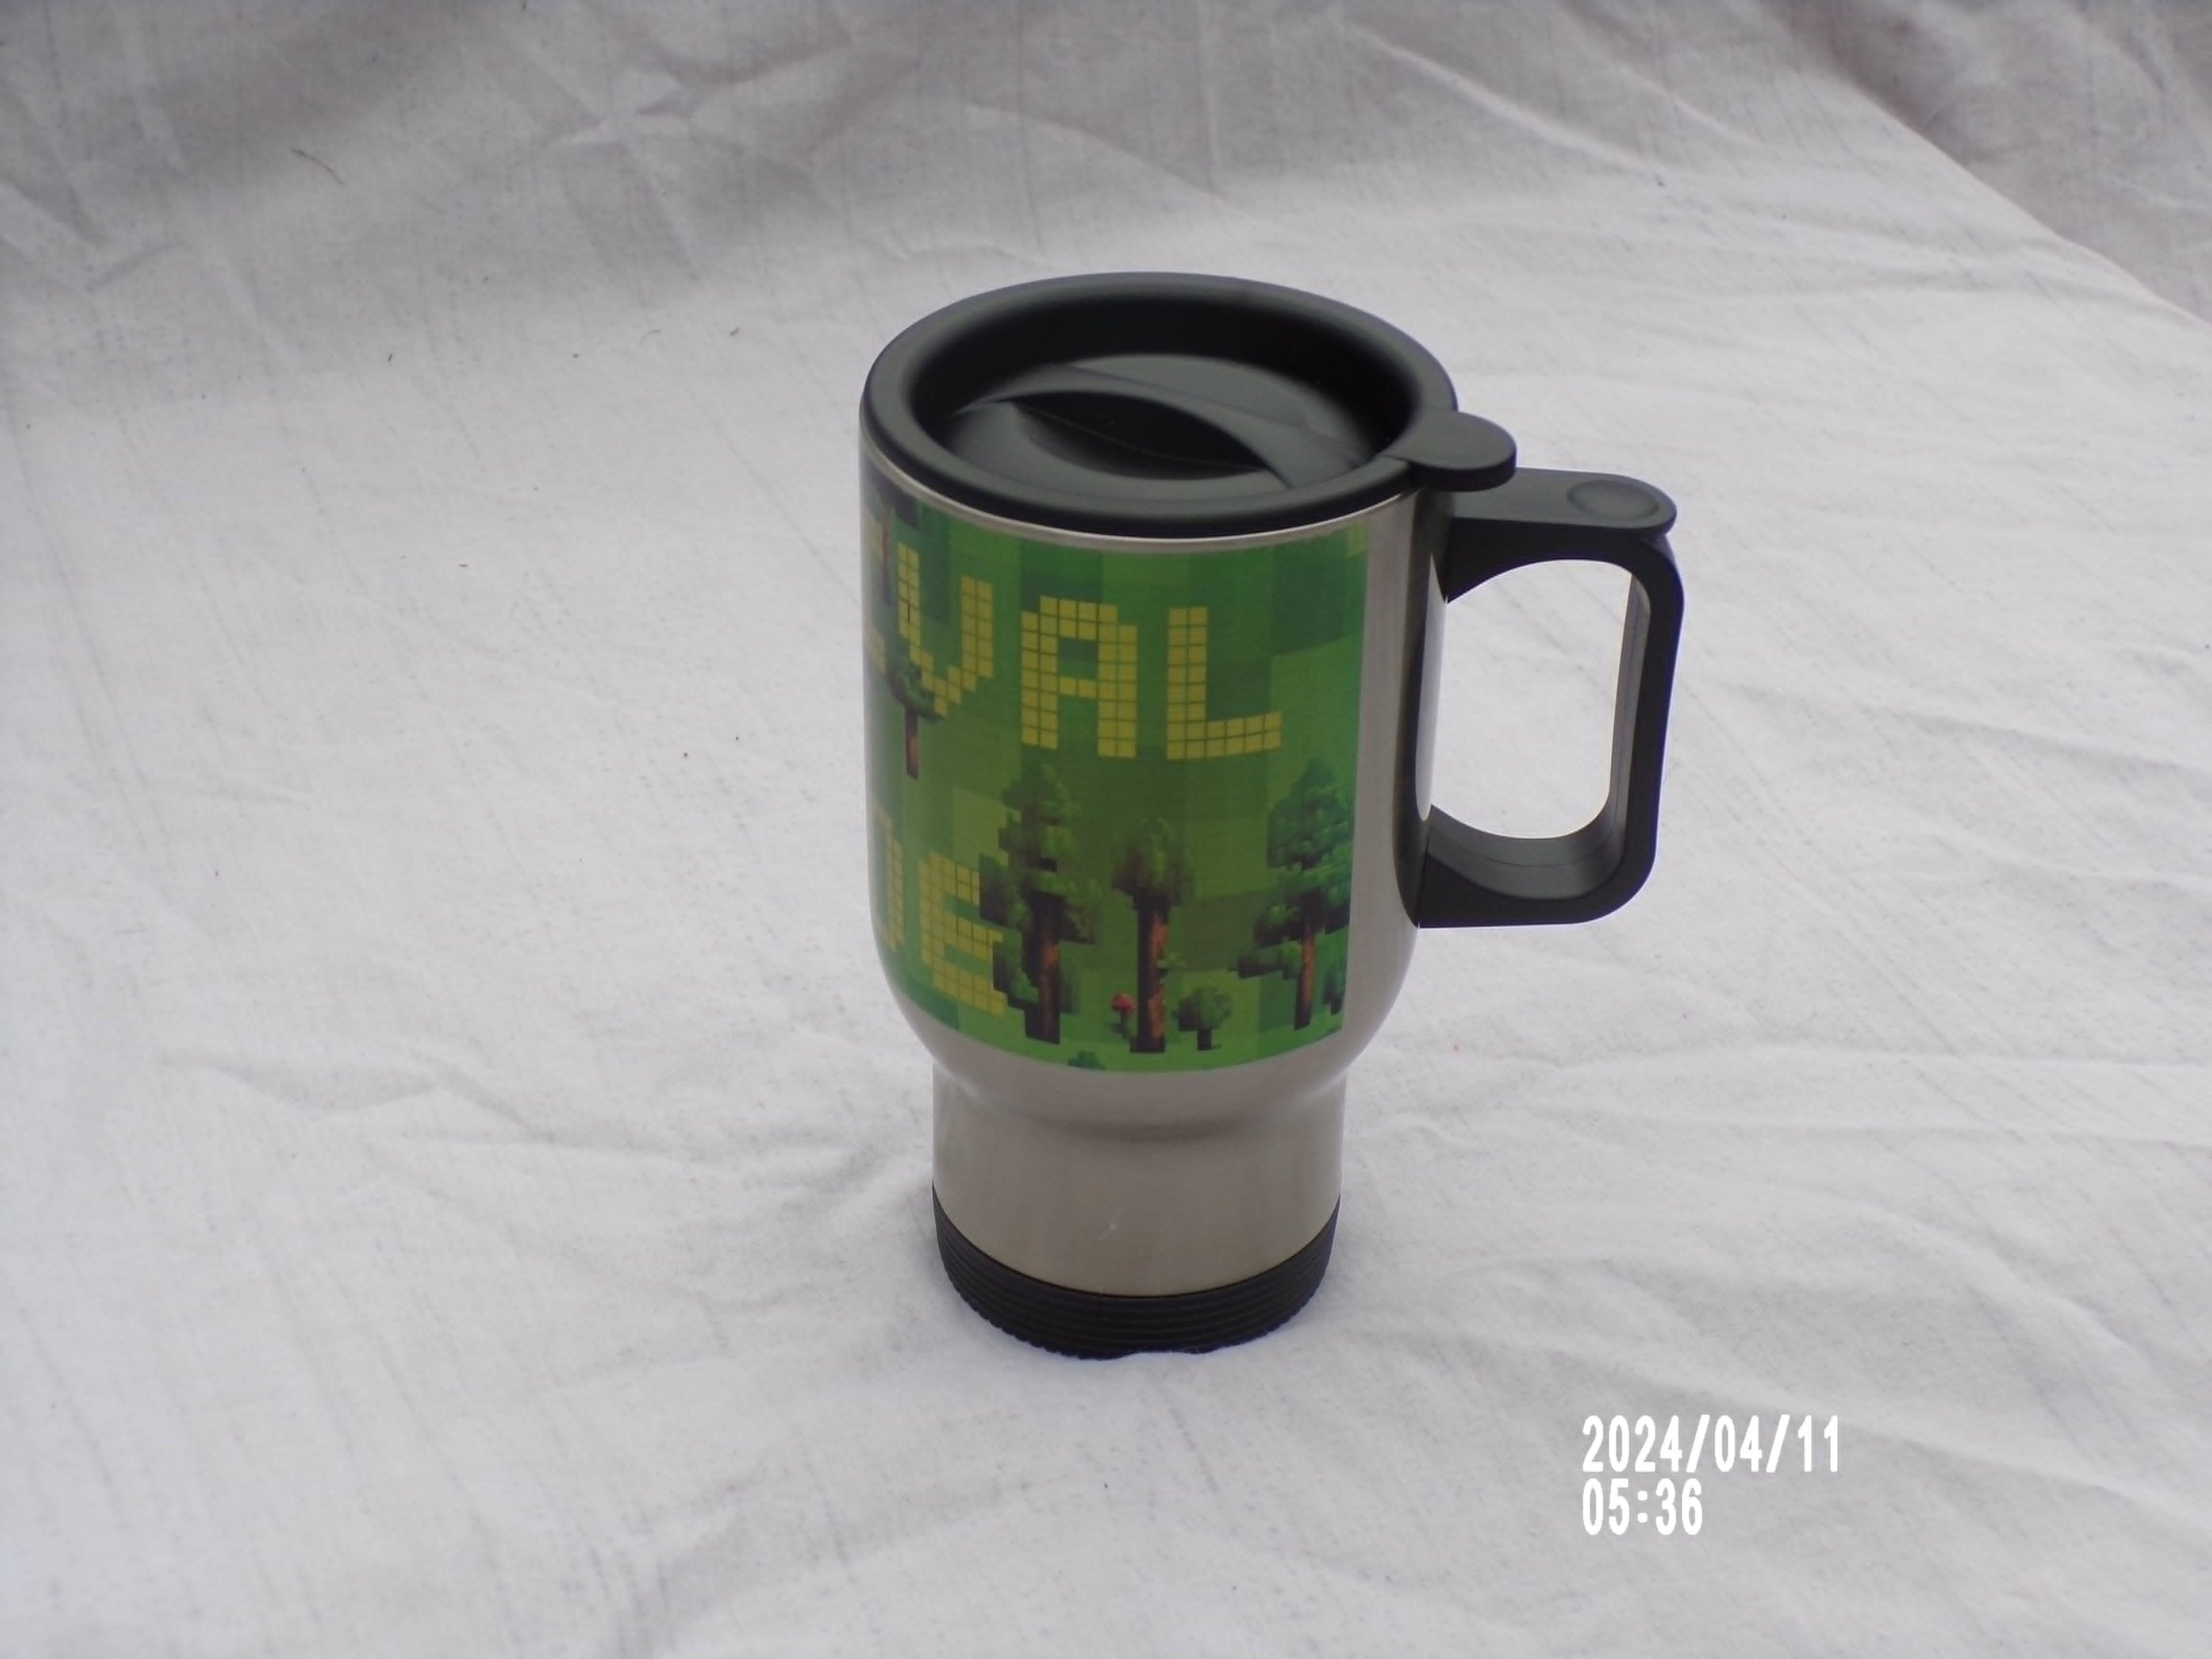 Survival mug